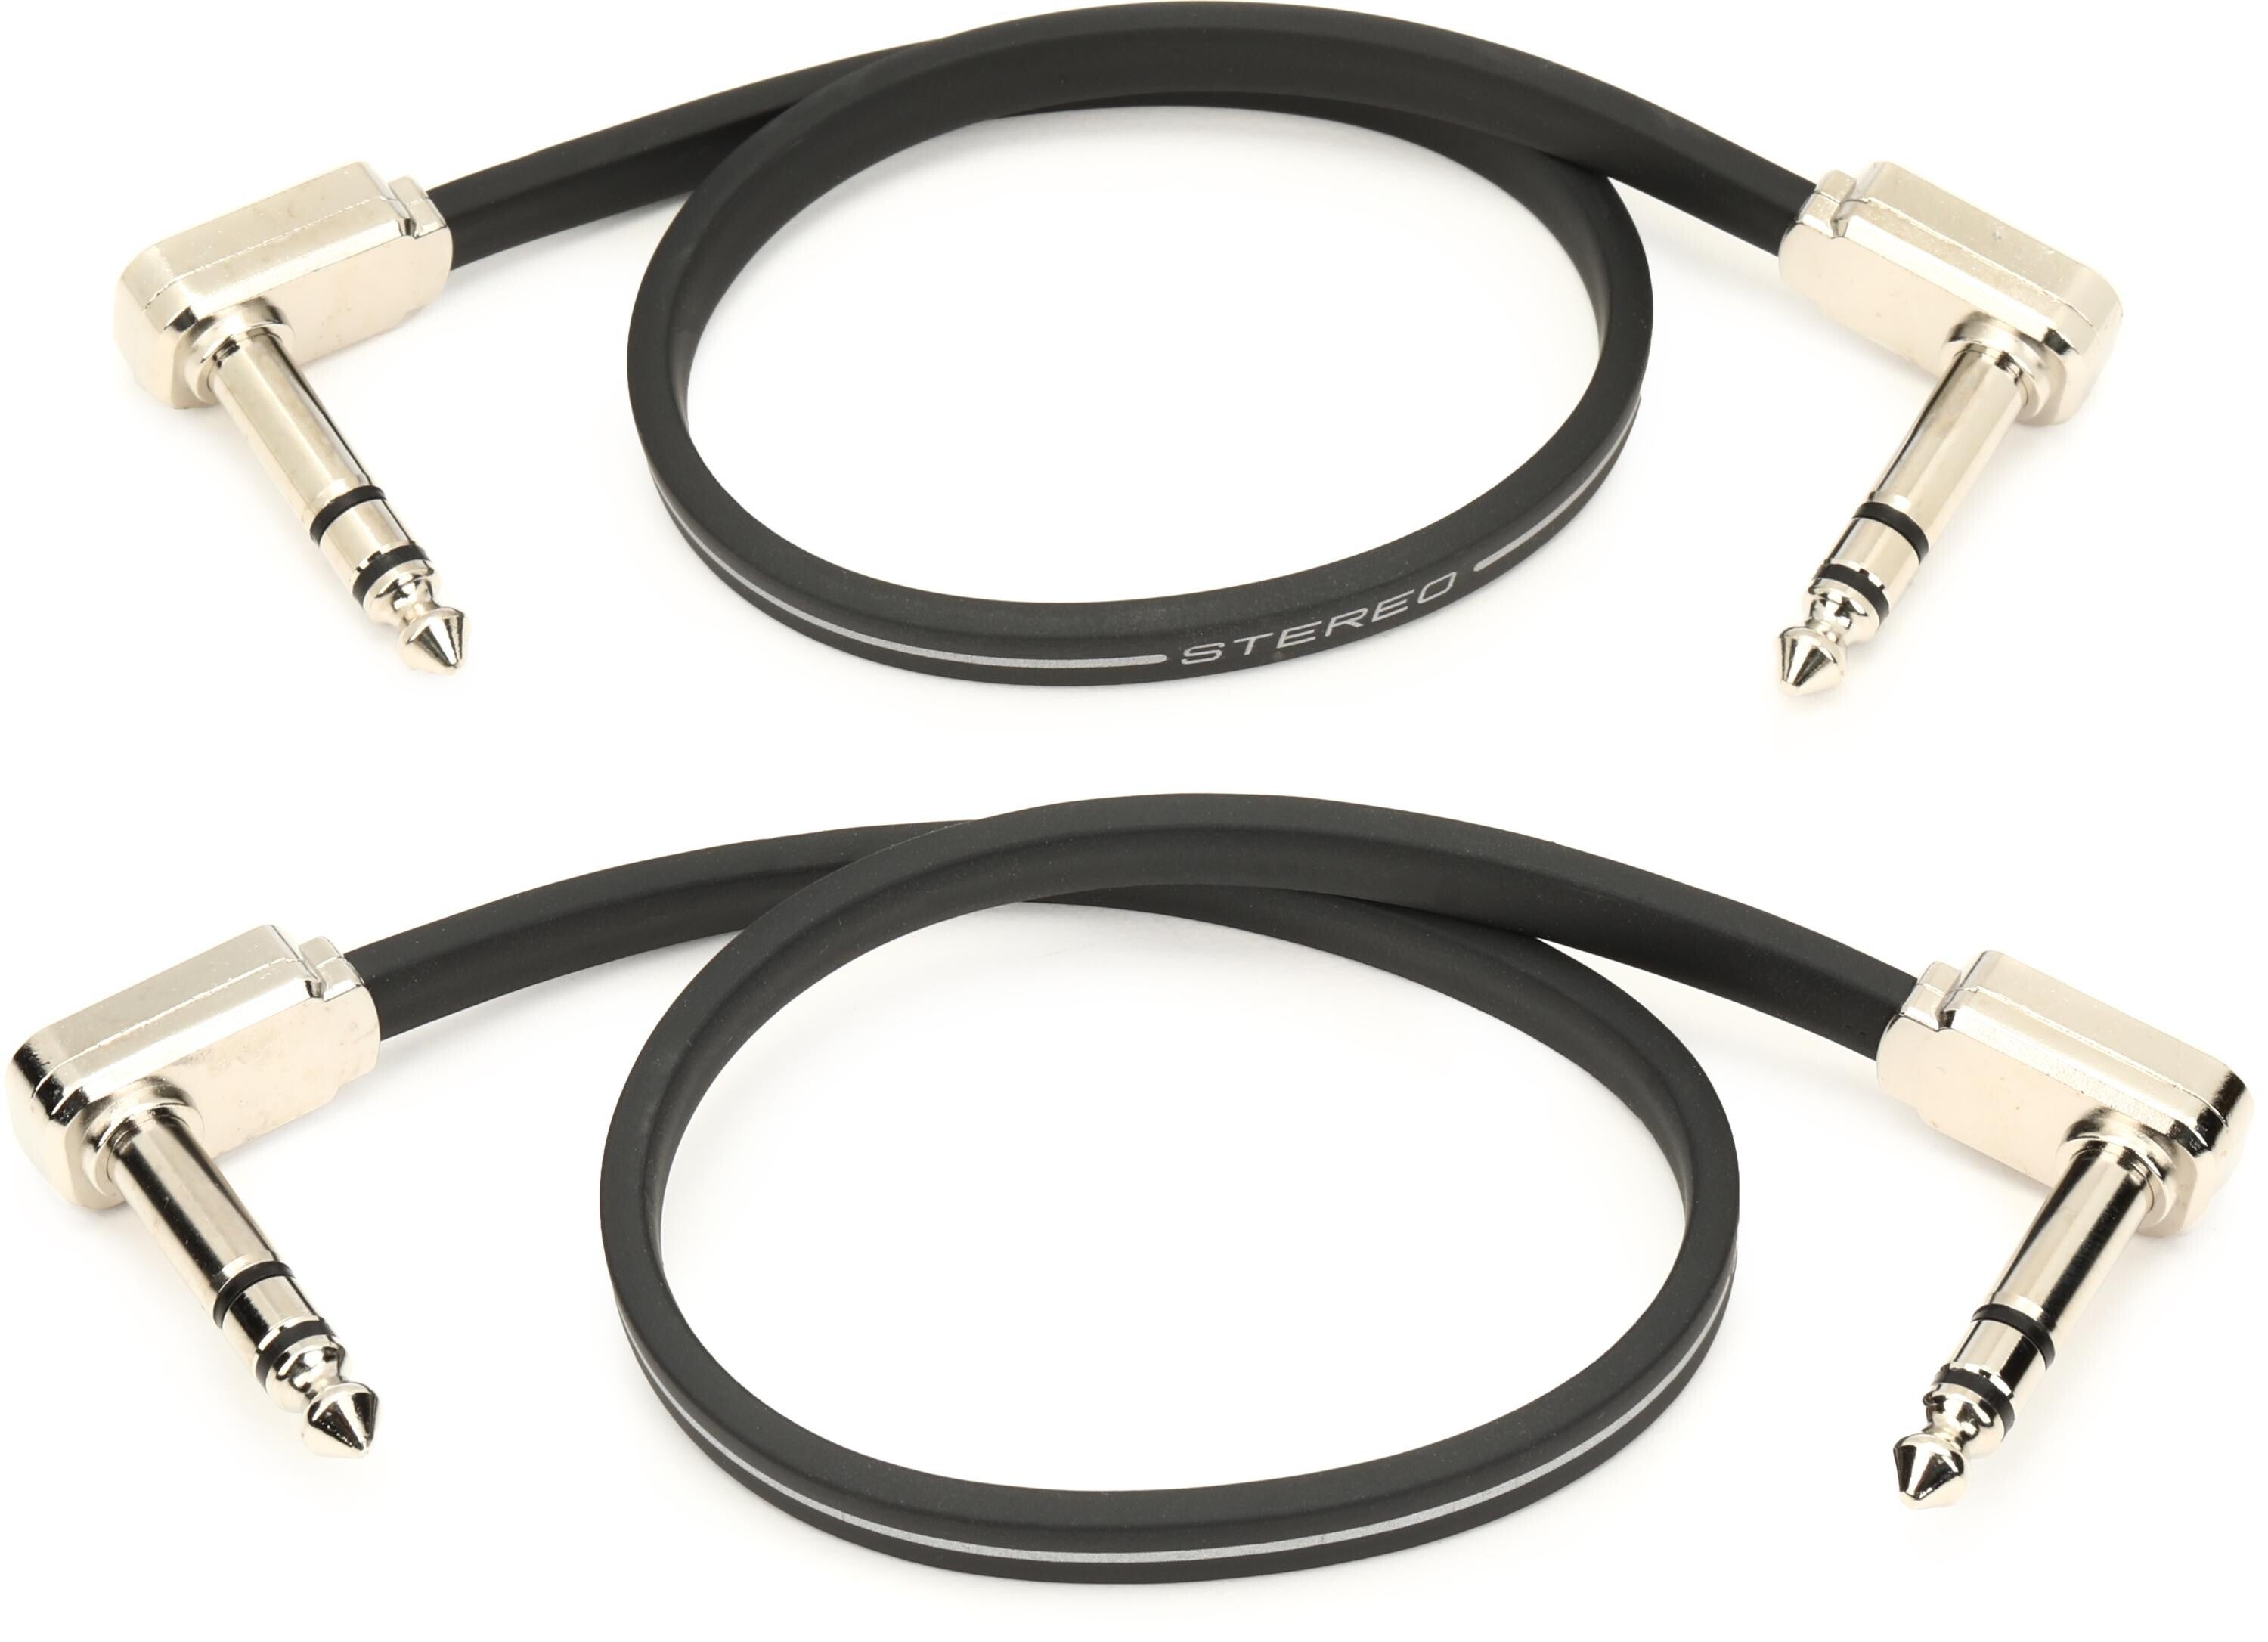 アーニーボール ERNIE BALL P06410 24 Single Flat Ribbon Stereo Patch Cable - Black  パッチケーブル - アクセサリー